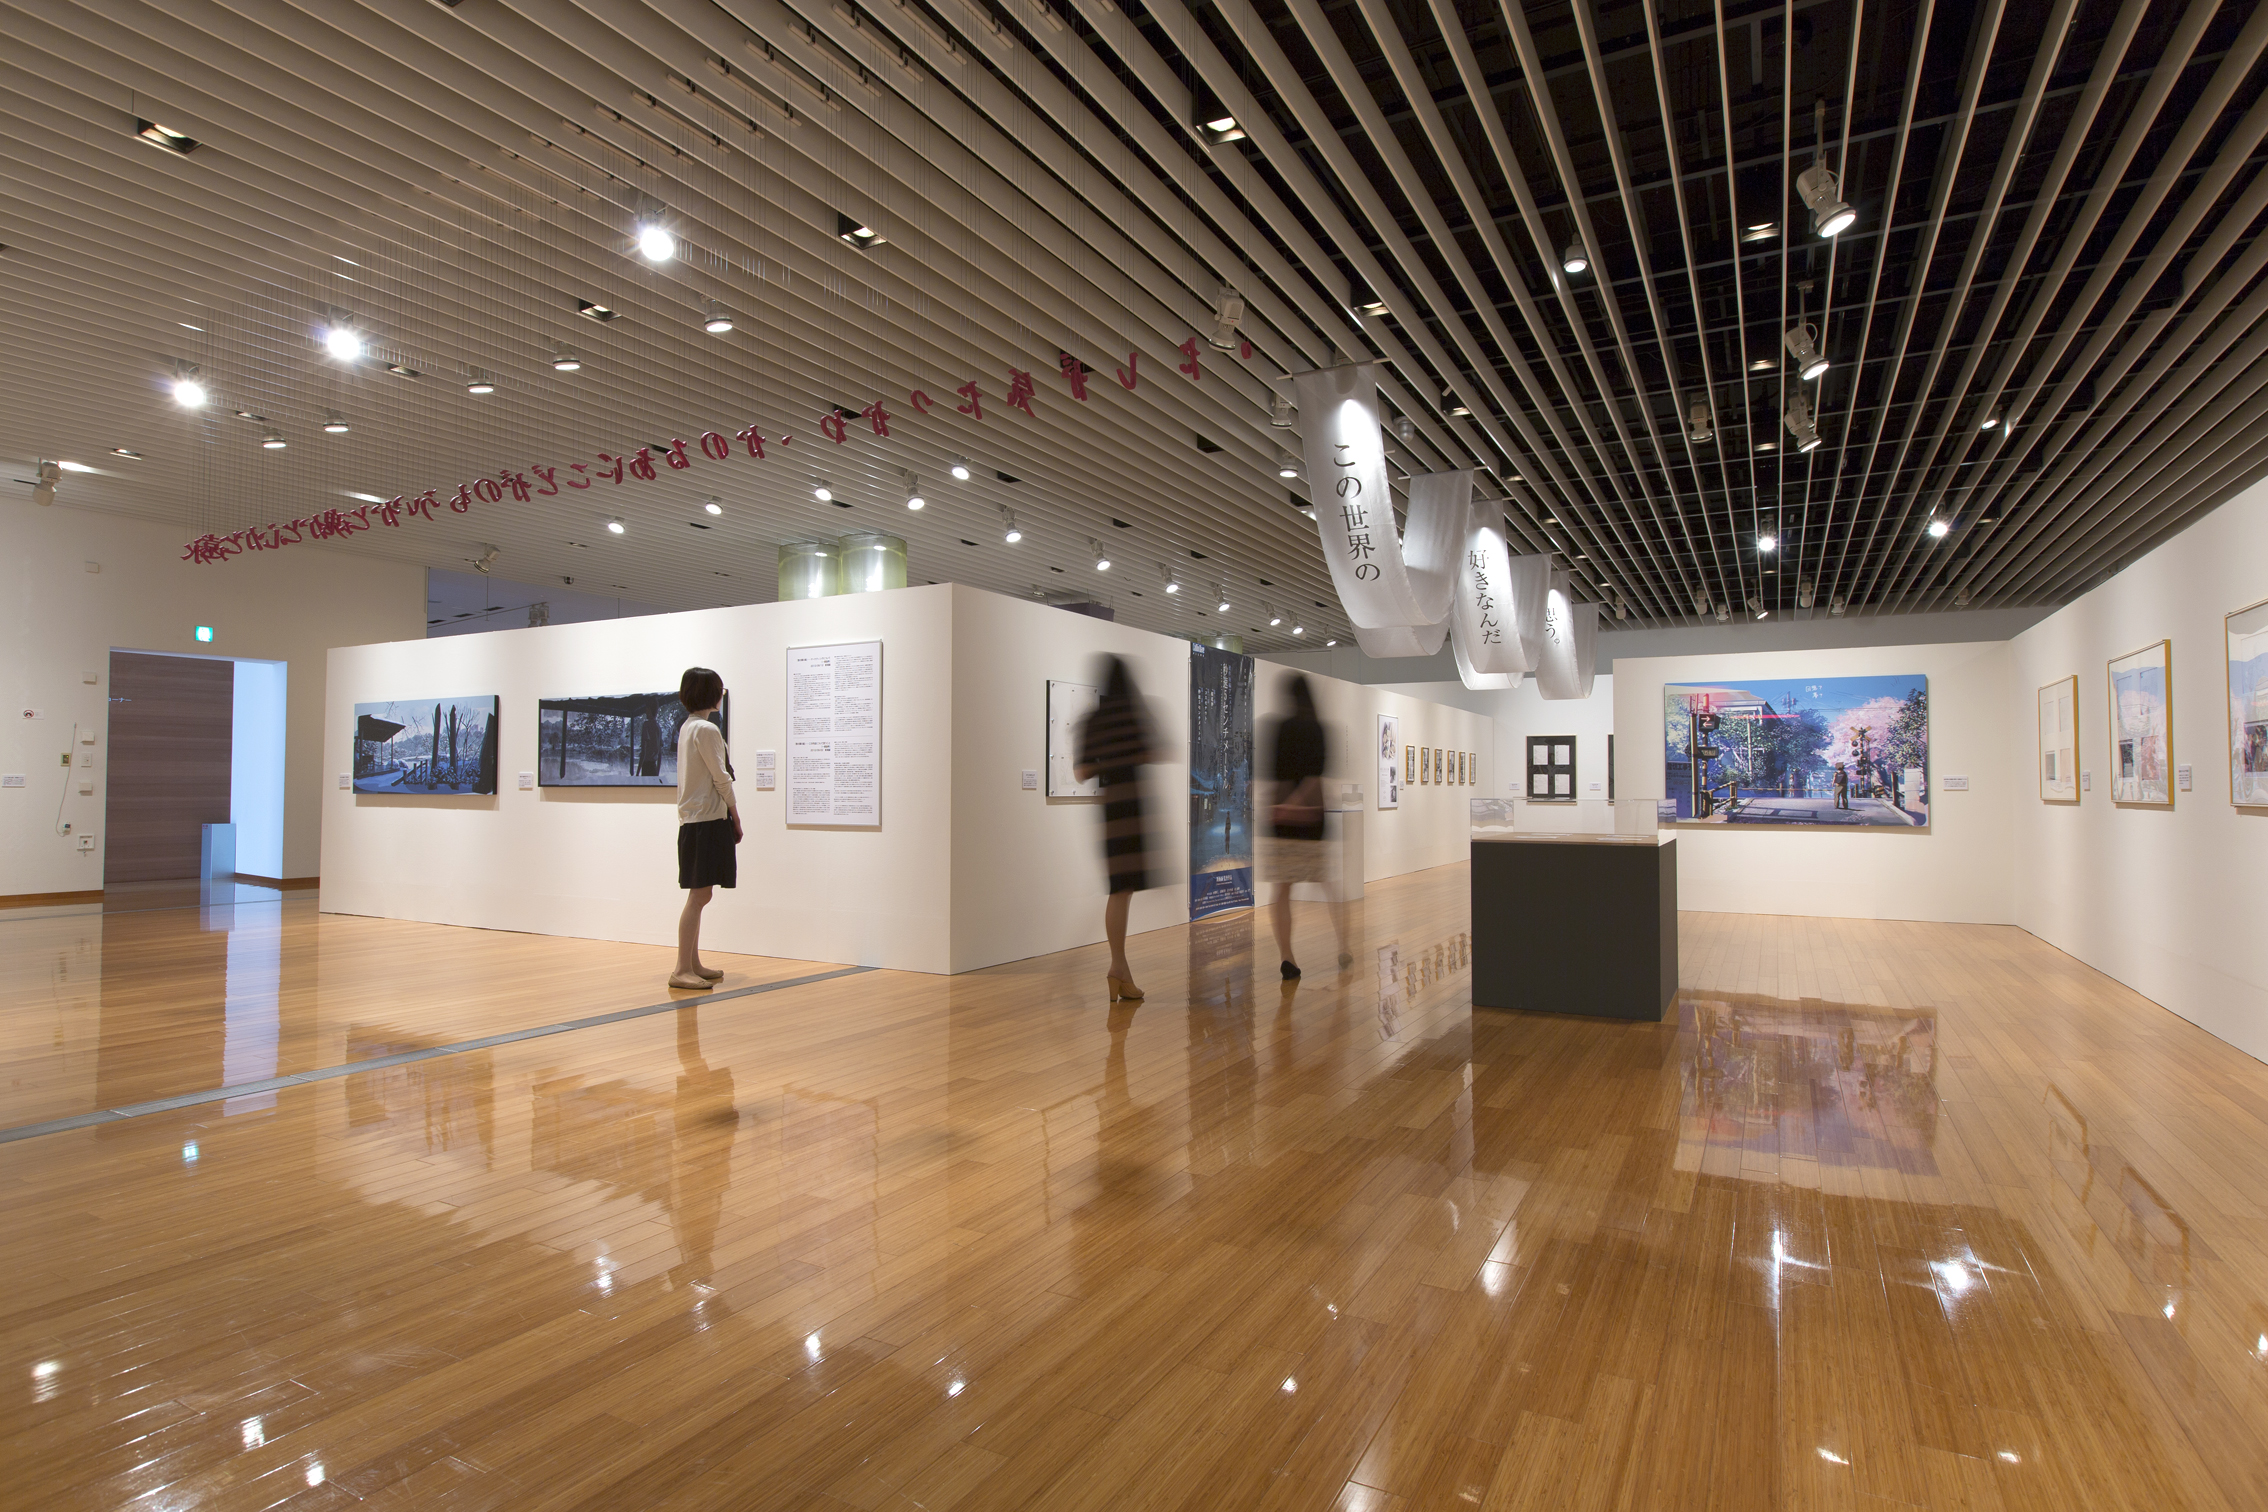 2014年に開催された、展覧会「新海誠展―きみはこの世界の、はんぶん。―」天井からことばをぶらさげたり、布にことばを映したり。さまざまなアイデアで展示している。